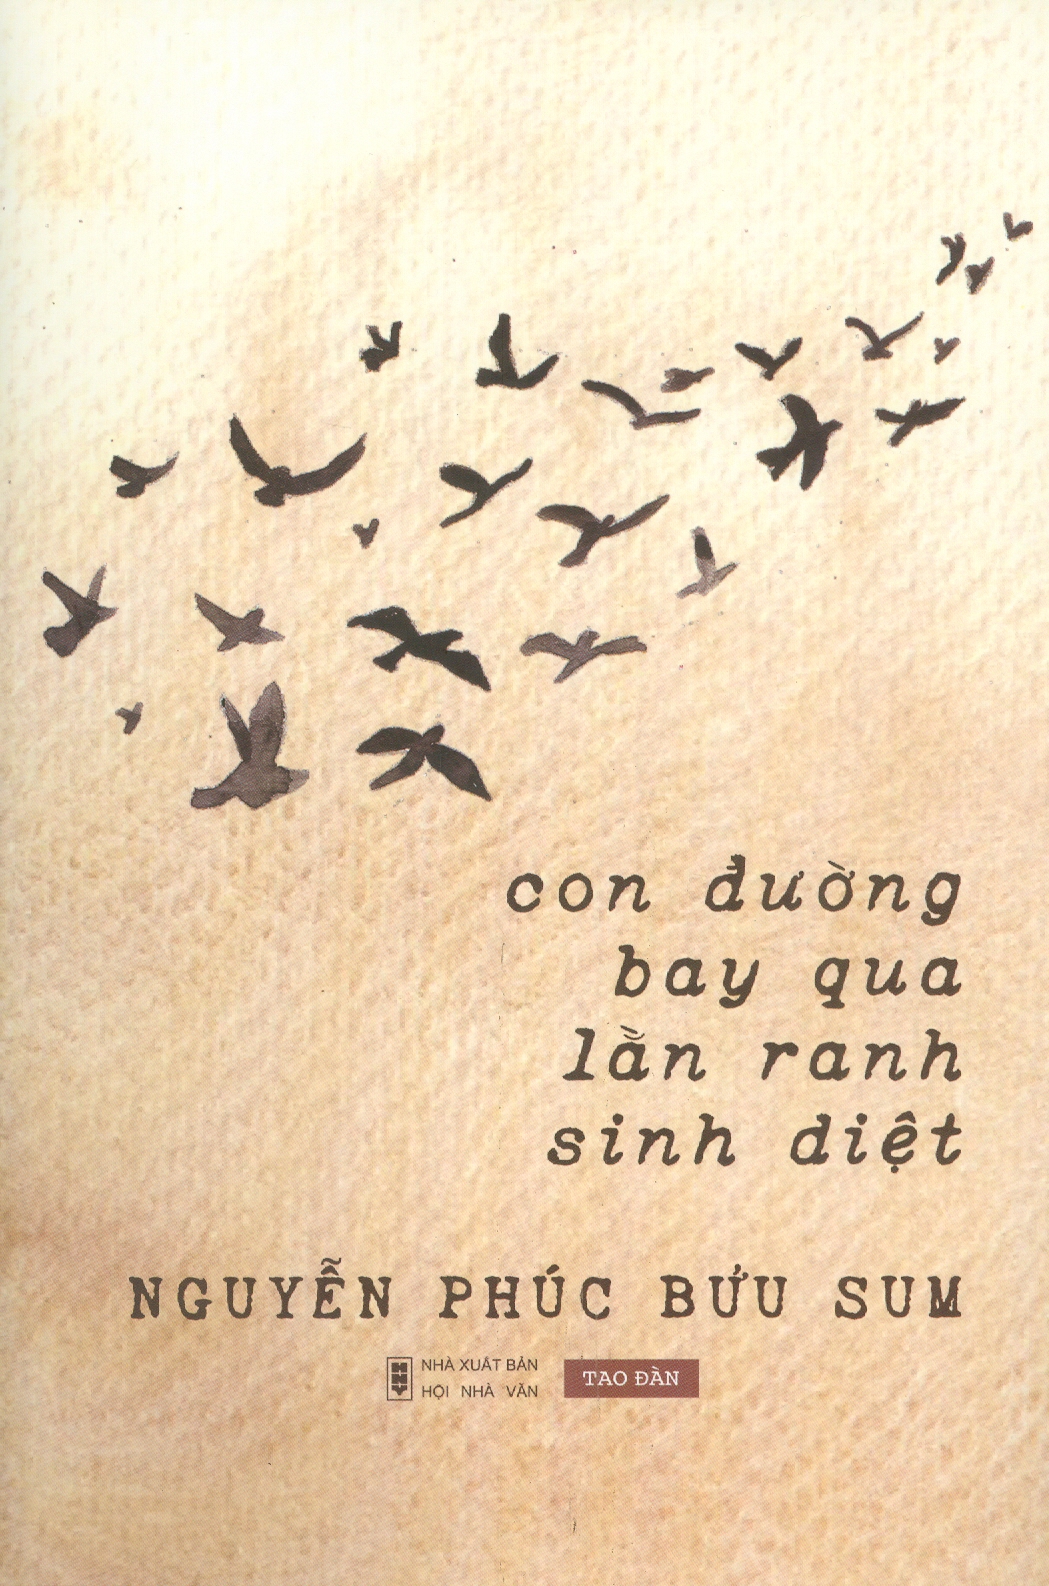 CON ĐƯỜNG BAY QUA LẰN RANH SINH DIỆT – Nguyễn Phúc Bửu Sum - Tao Đàn – Nxb Hội Nhà Văn (bìa mềm)